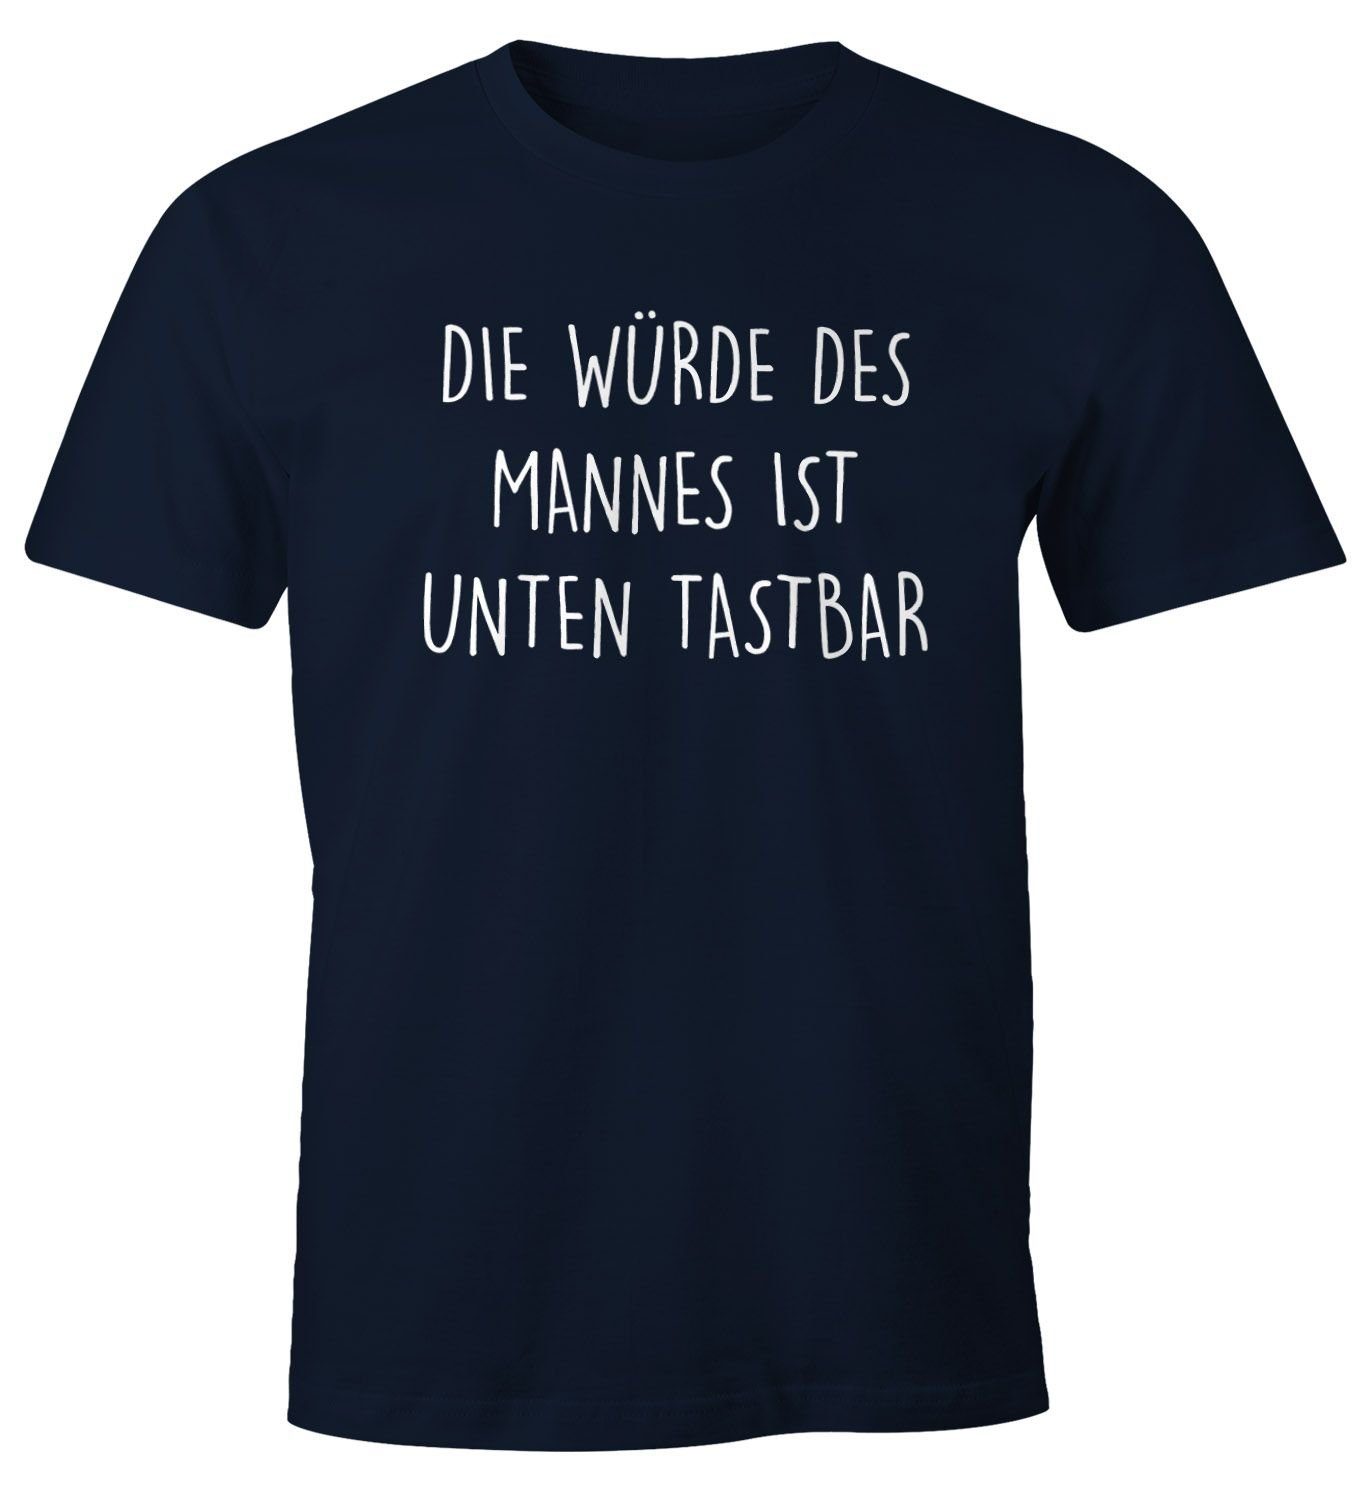 Die ist Print-Shirt Herren Lustiges tastbar Würde unten Spruch mit MoonWorks Print Fun-Shirt navy mit T-Shirt Mannes des Moonworks®